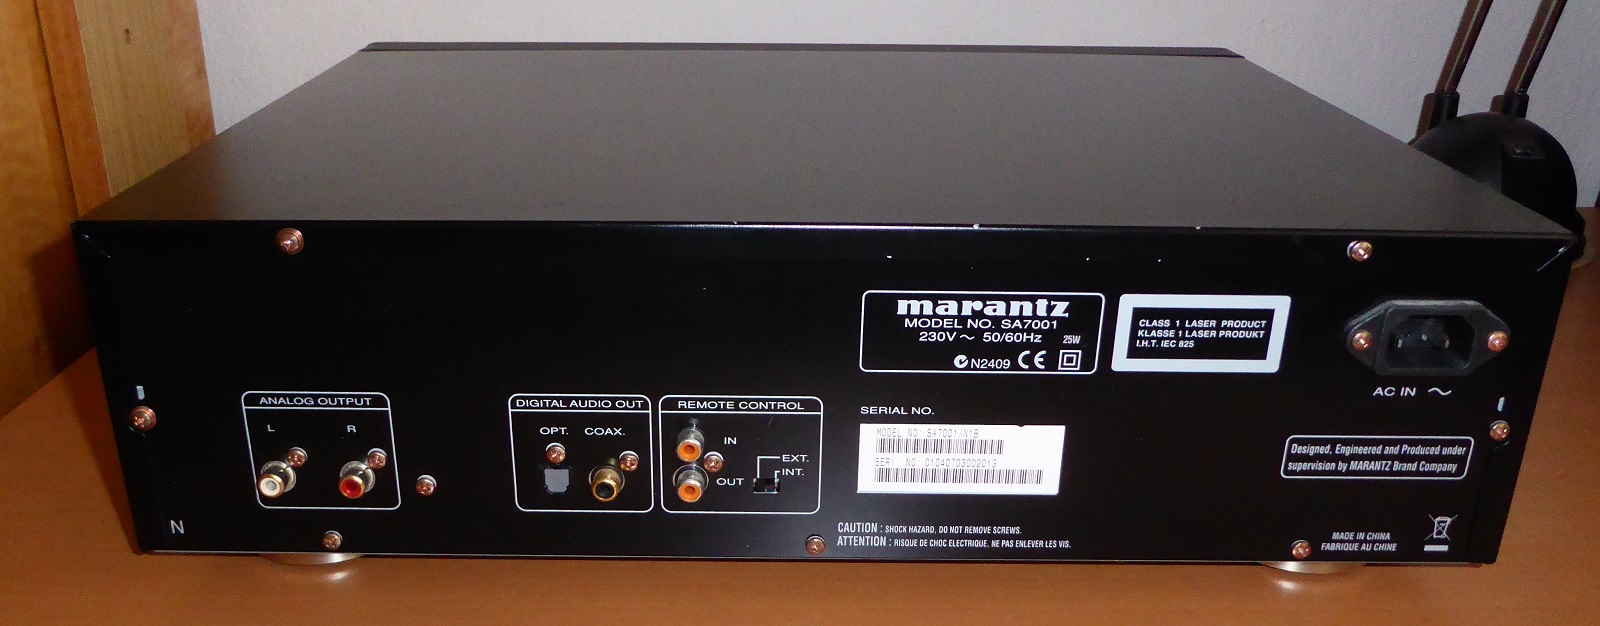 Review and Measurements of Marantz SA7001 CD/SACD player | Audio 